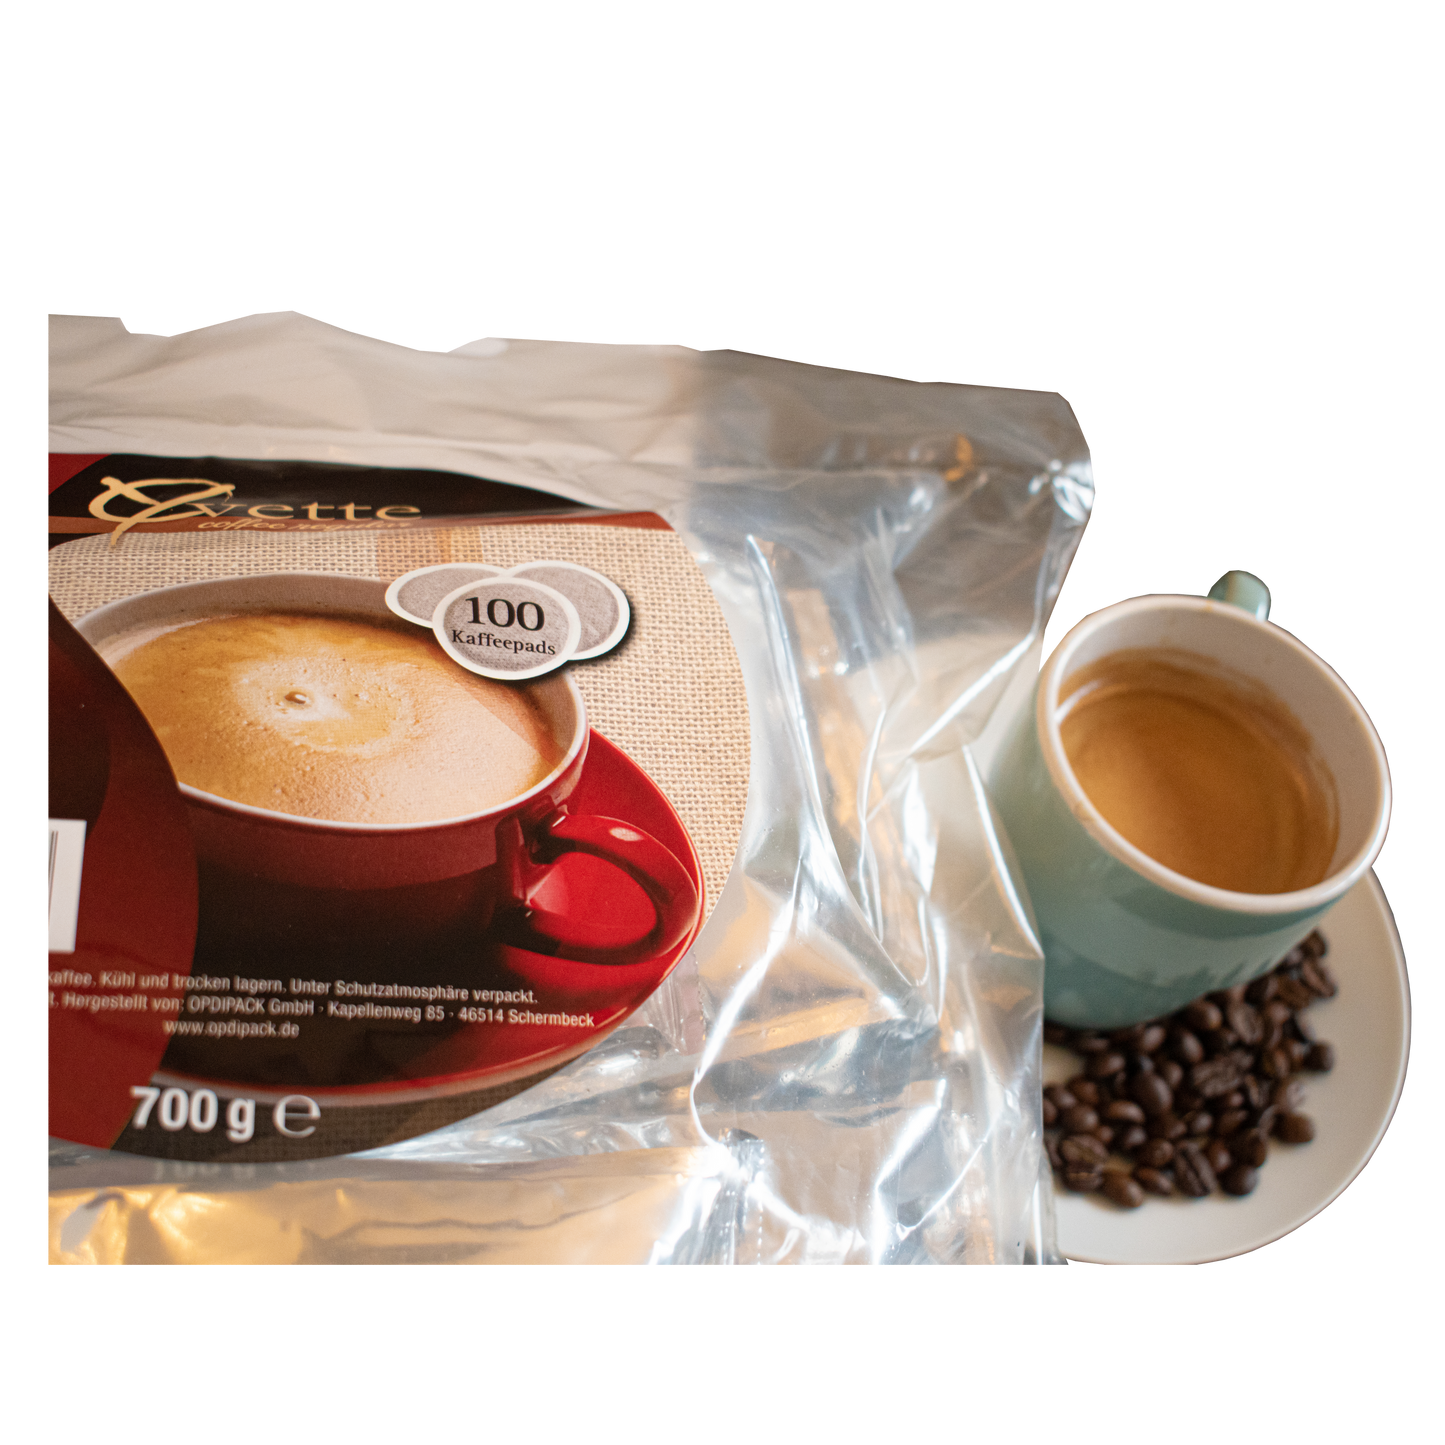 Serviervorschlag Kaffeepads Regular Crema mit Tasse Kaffee und Bohnen